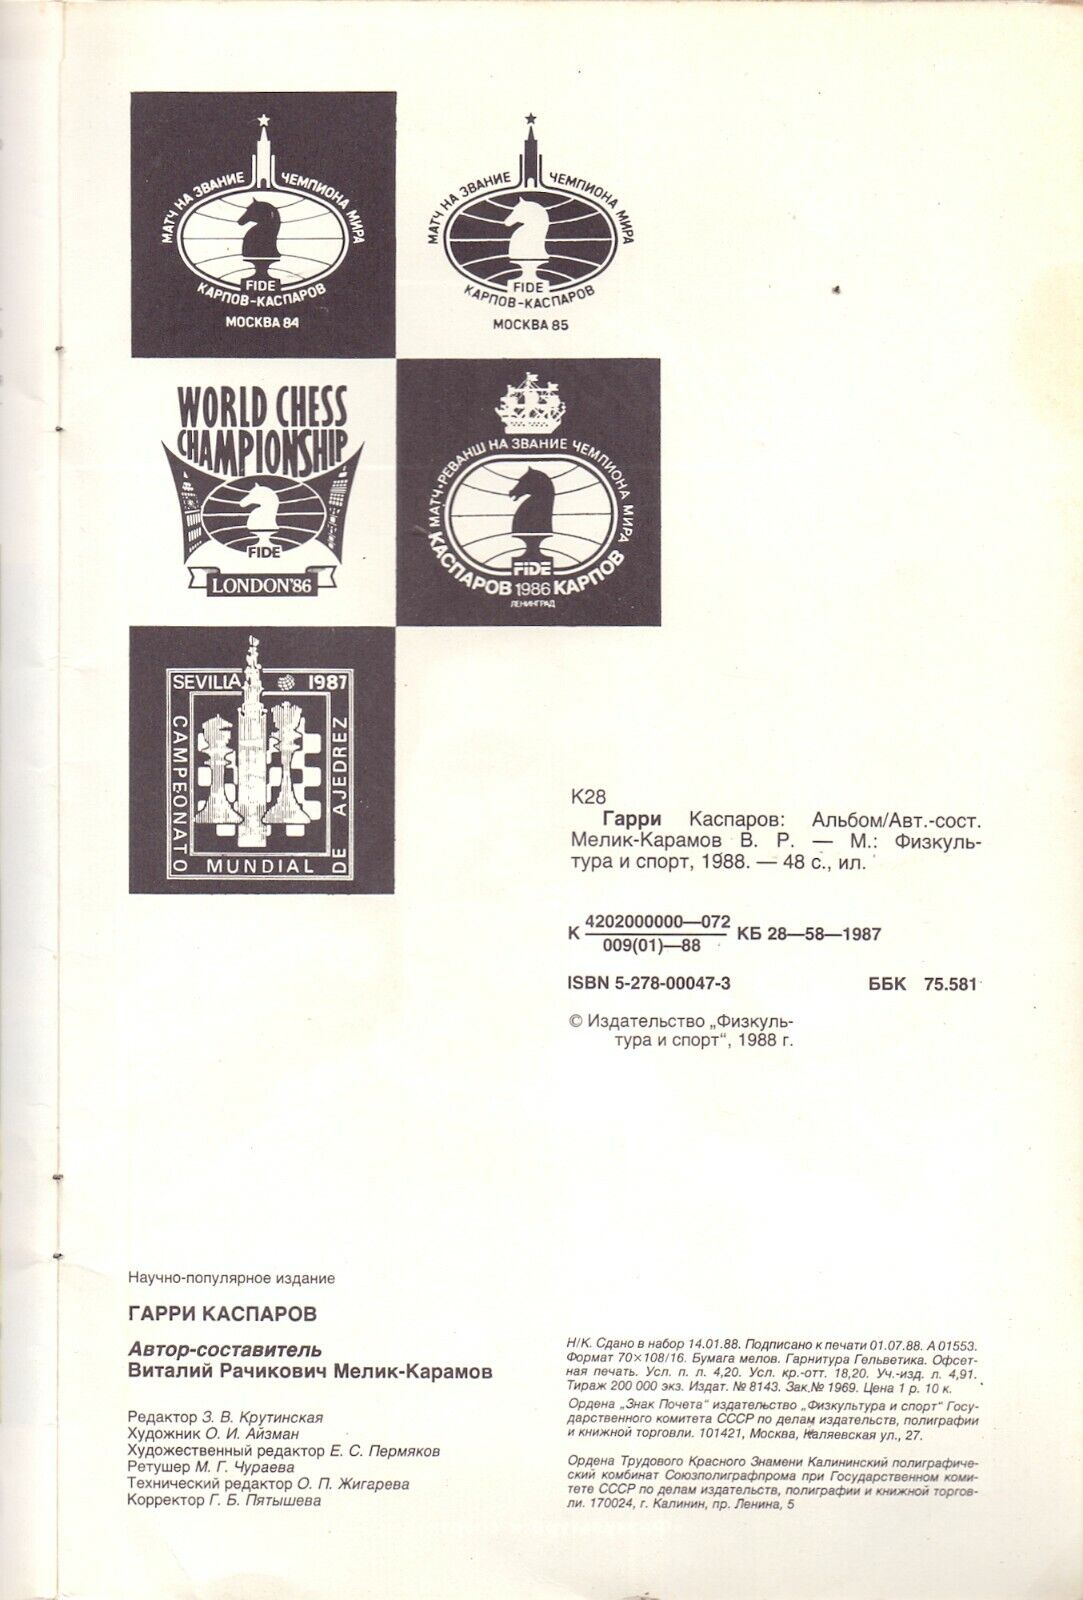 11606.Russian Soviet chess book: V. Melik - Karamov. Garry Kasparov. Album. 1988